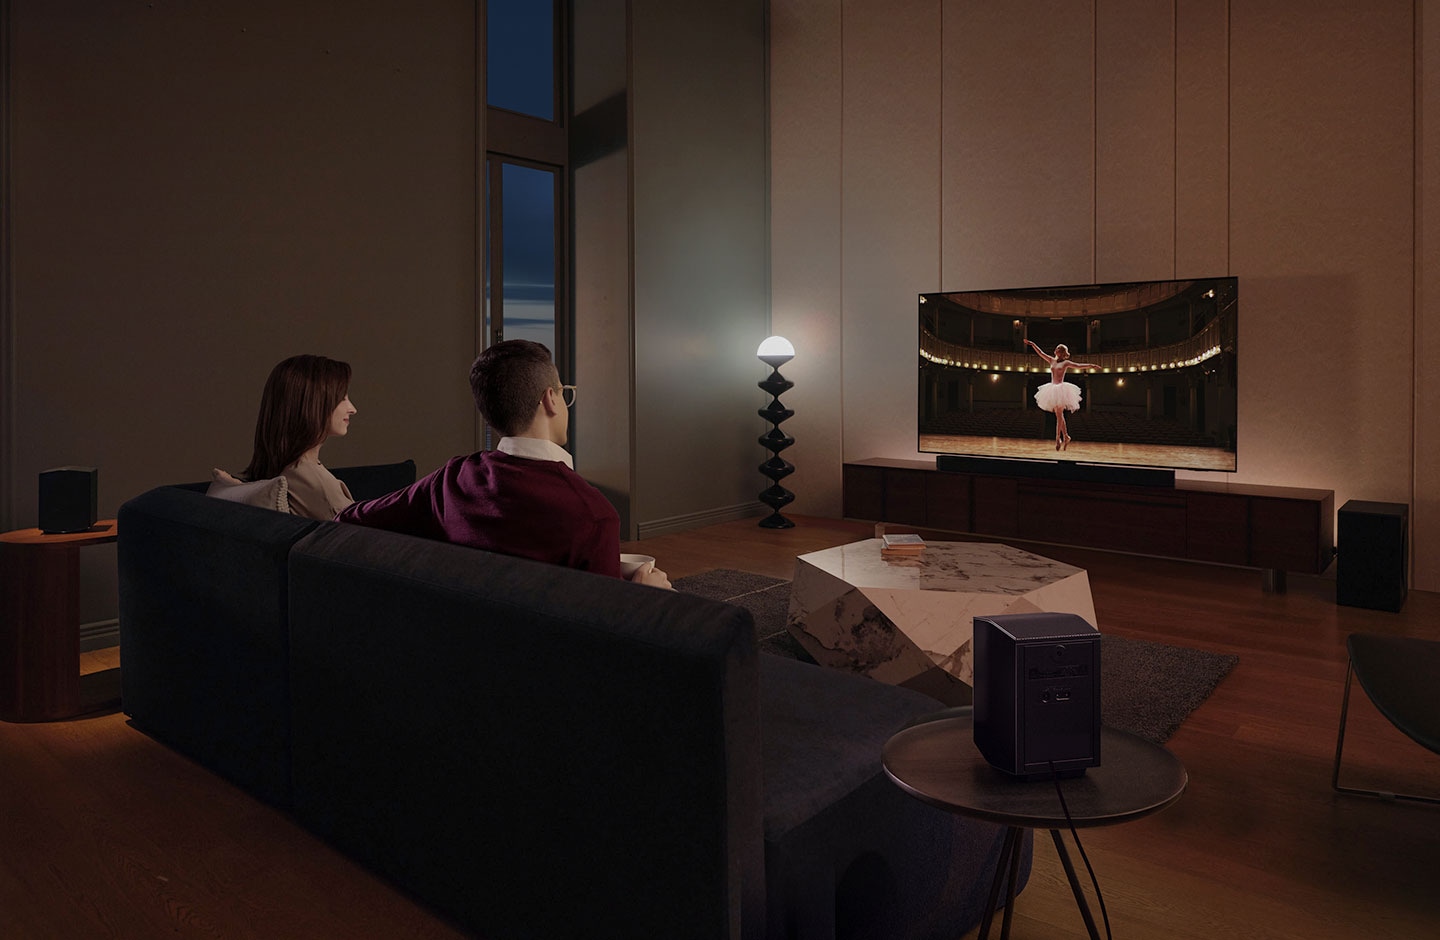 زوجان يستمتعان بمشاهدة فيلم السهرة في غرفتهما مع الصوت المحيطي المسرحي الصادر عن جهاز Samsung Soundbar